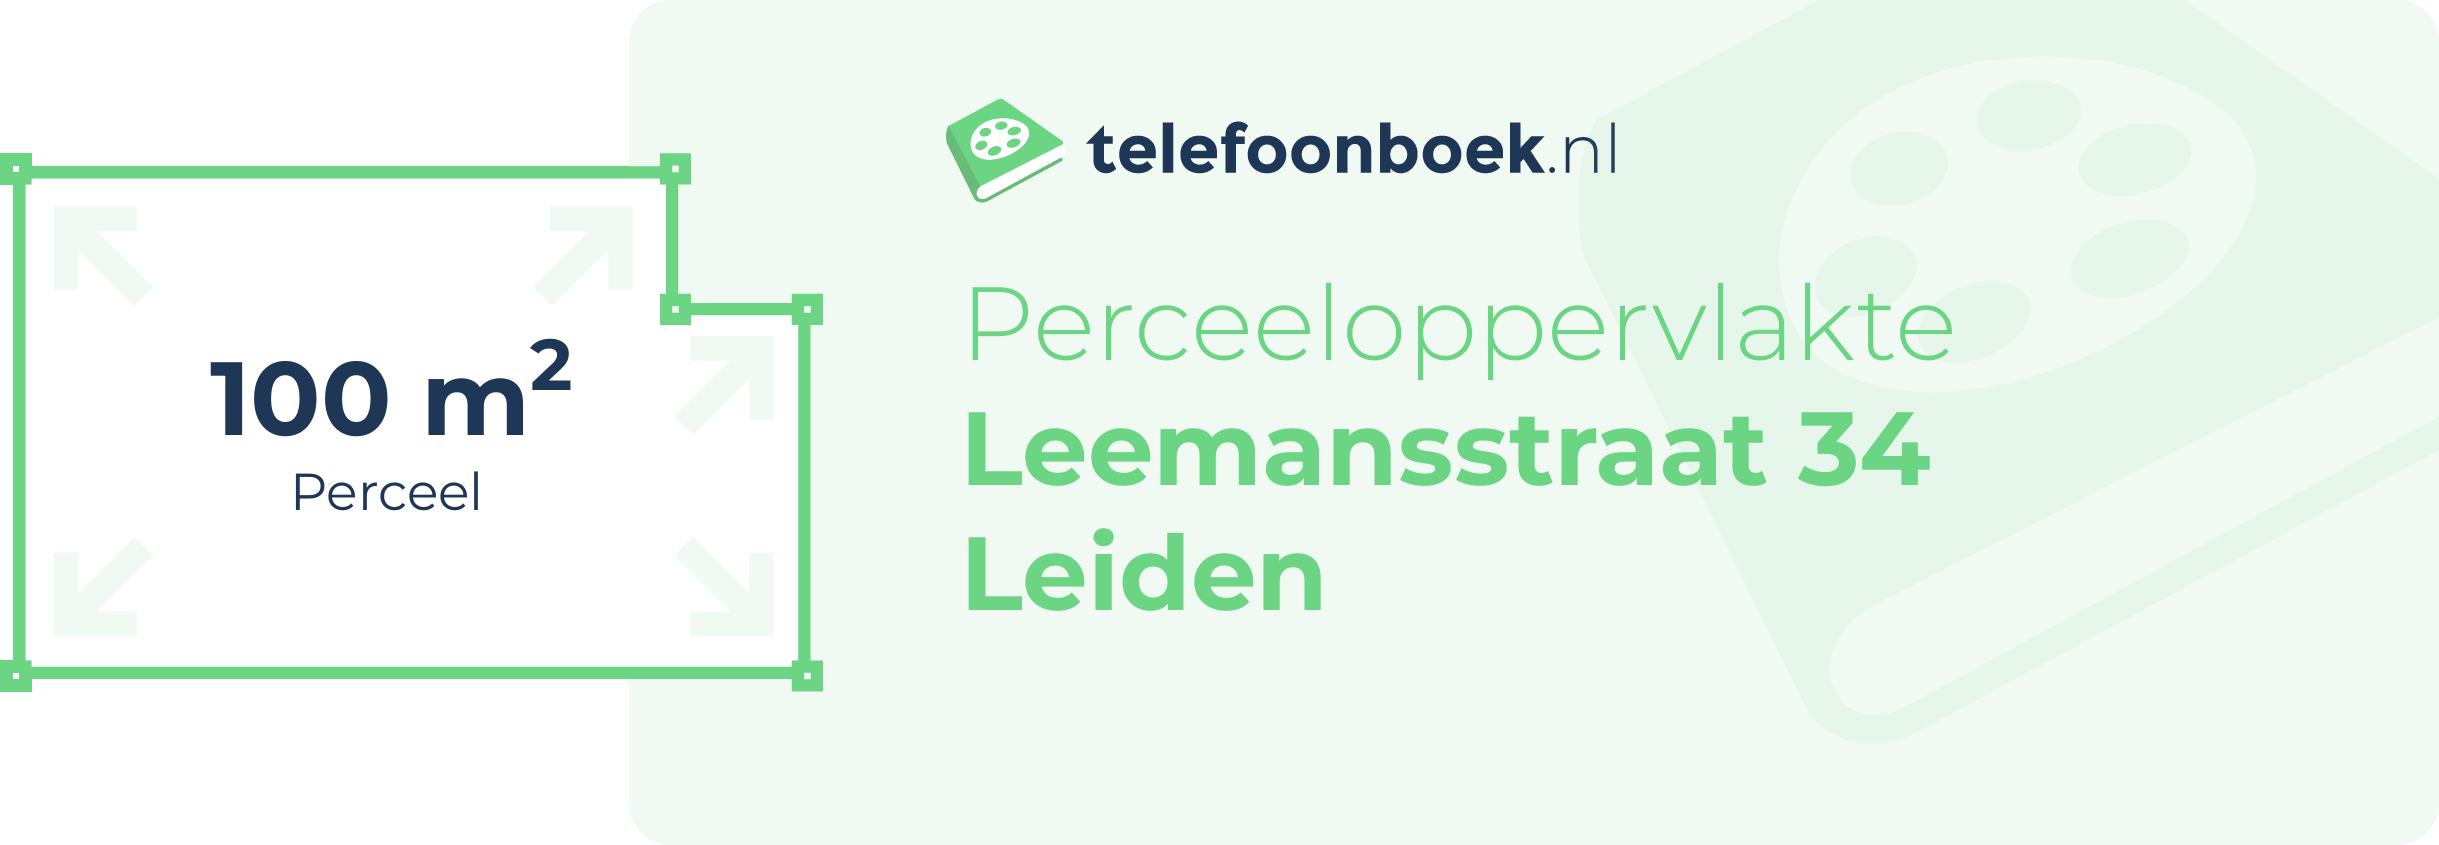 Perceeloppervlakte Leemansstraat 34 Leiden